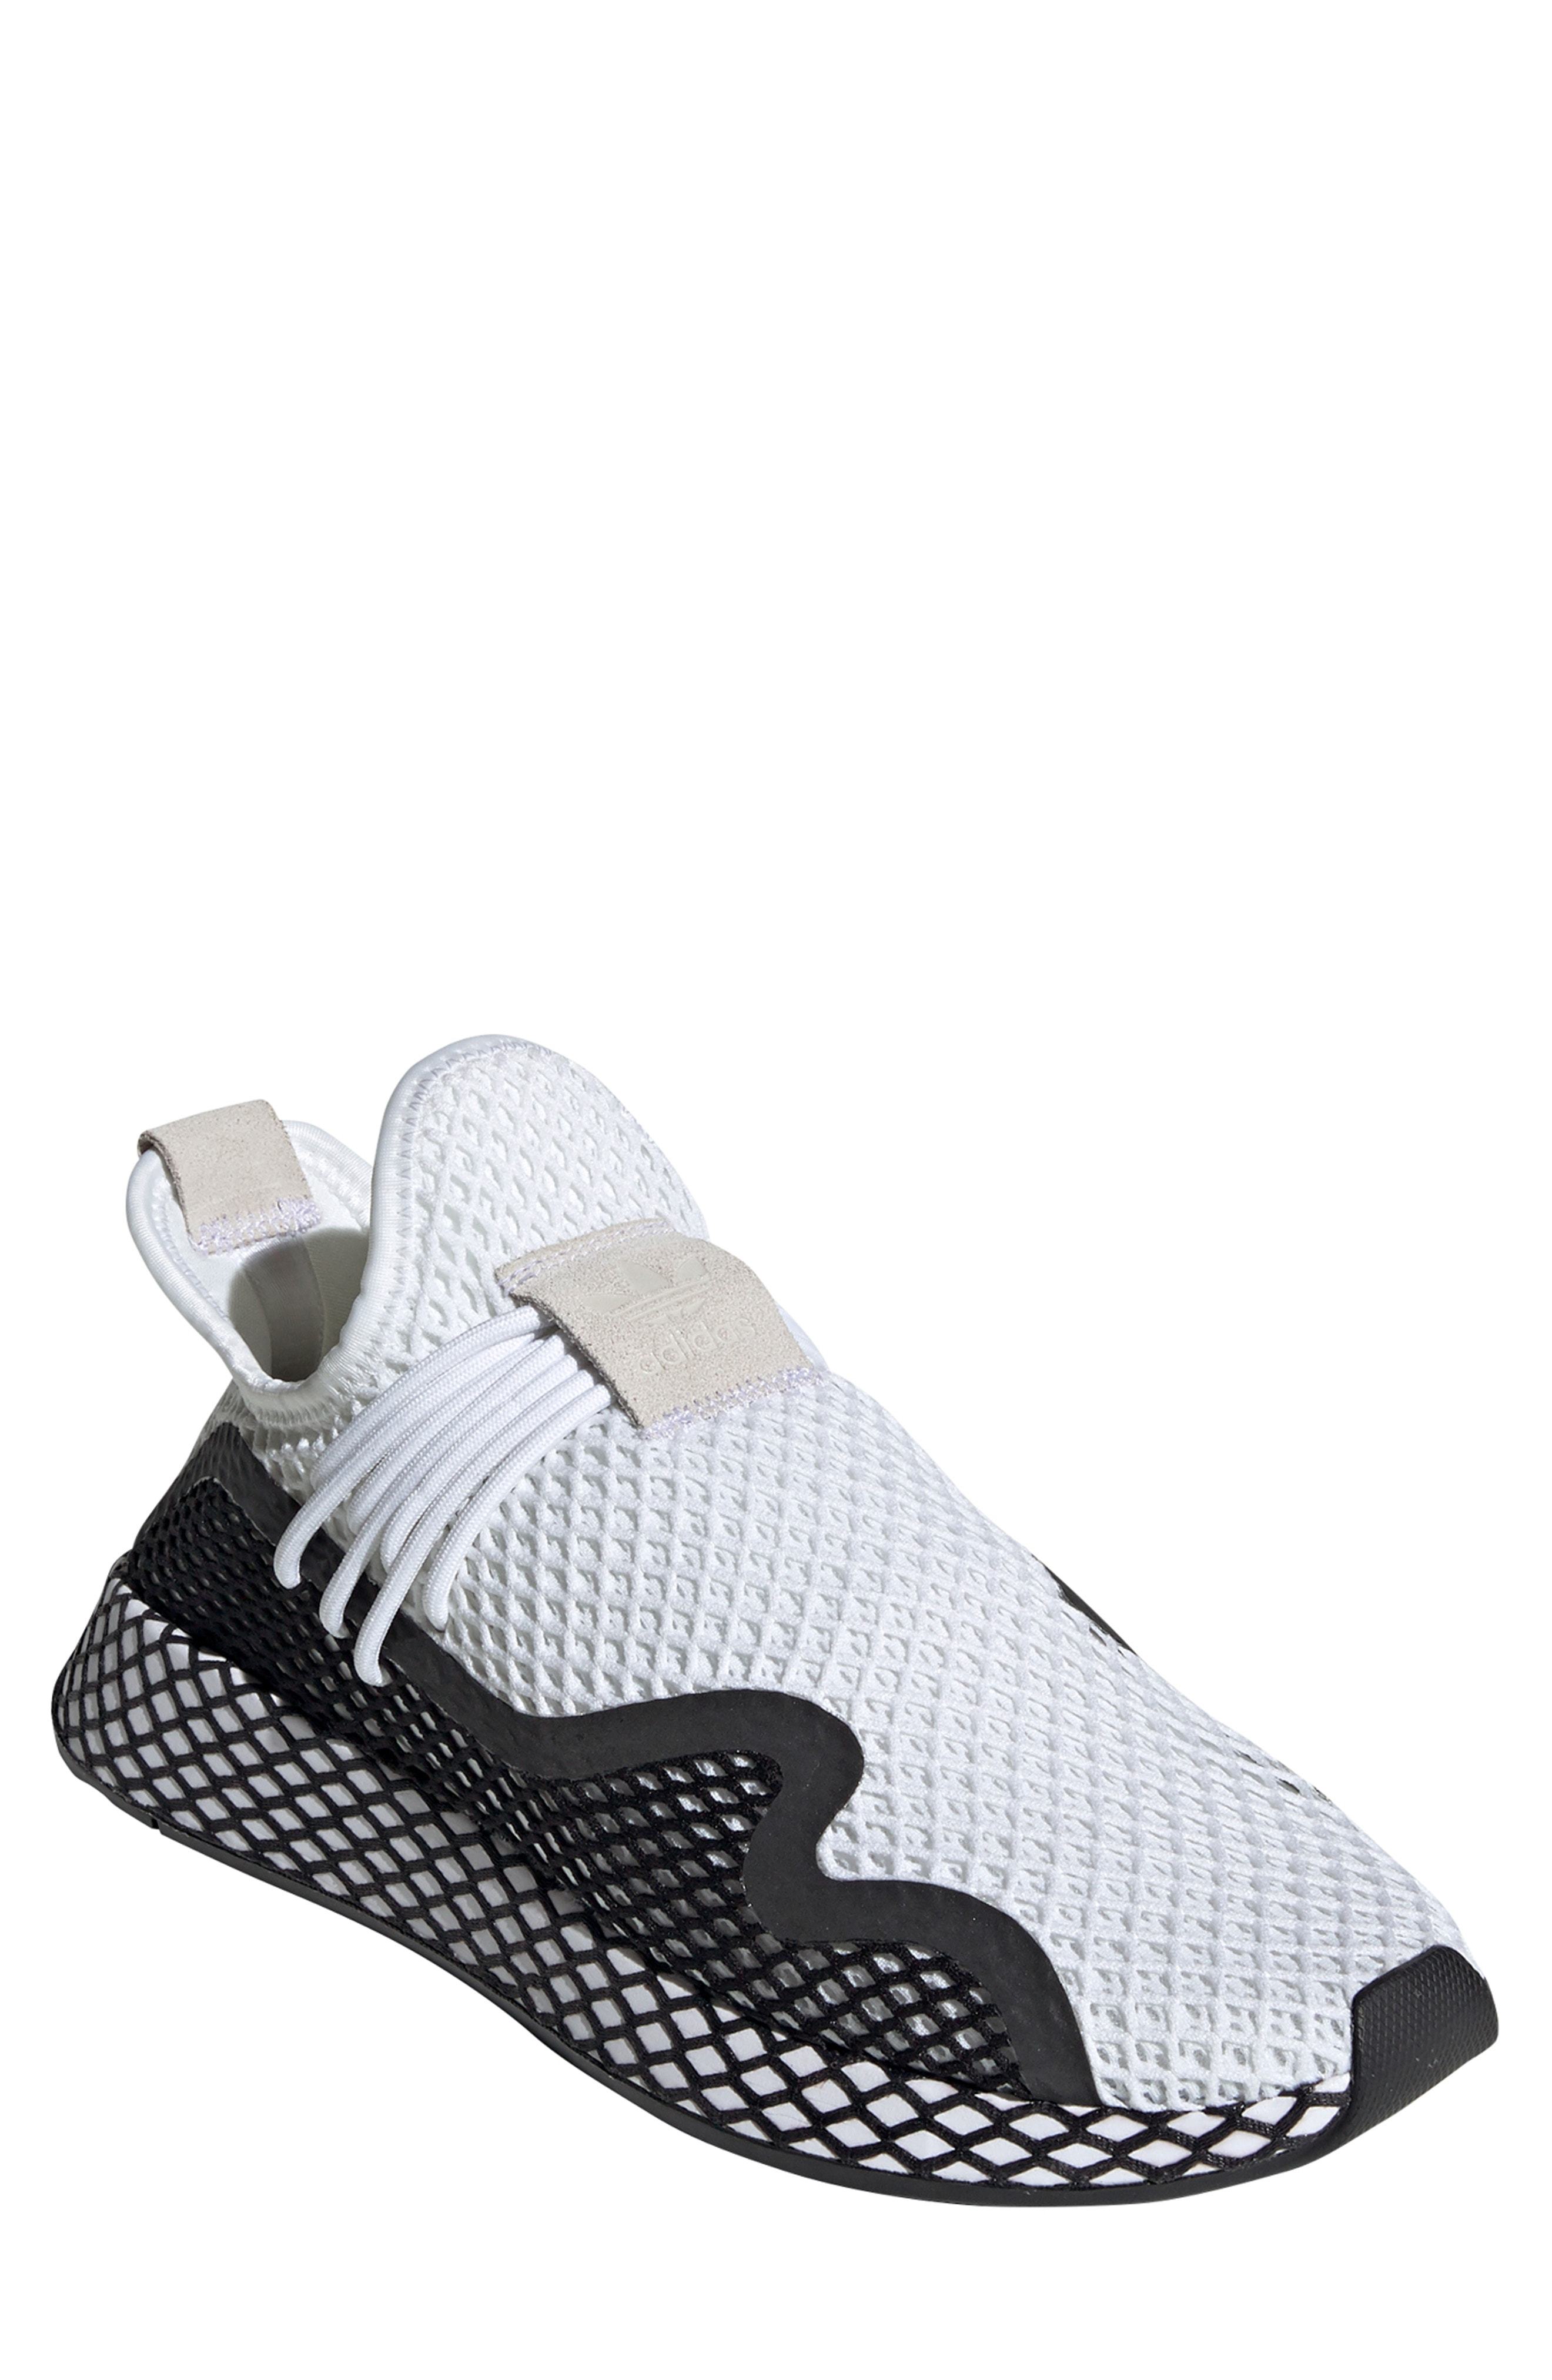 scarf Peephole Flock adidas Deerupt Runner Sneaker, $109 | Nordstrom | Lookastic